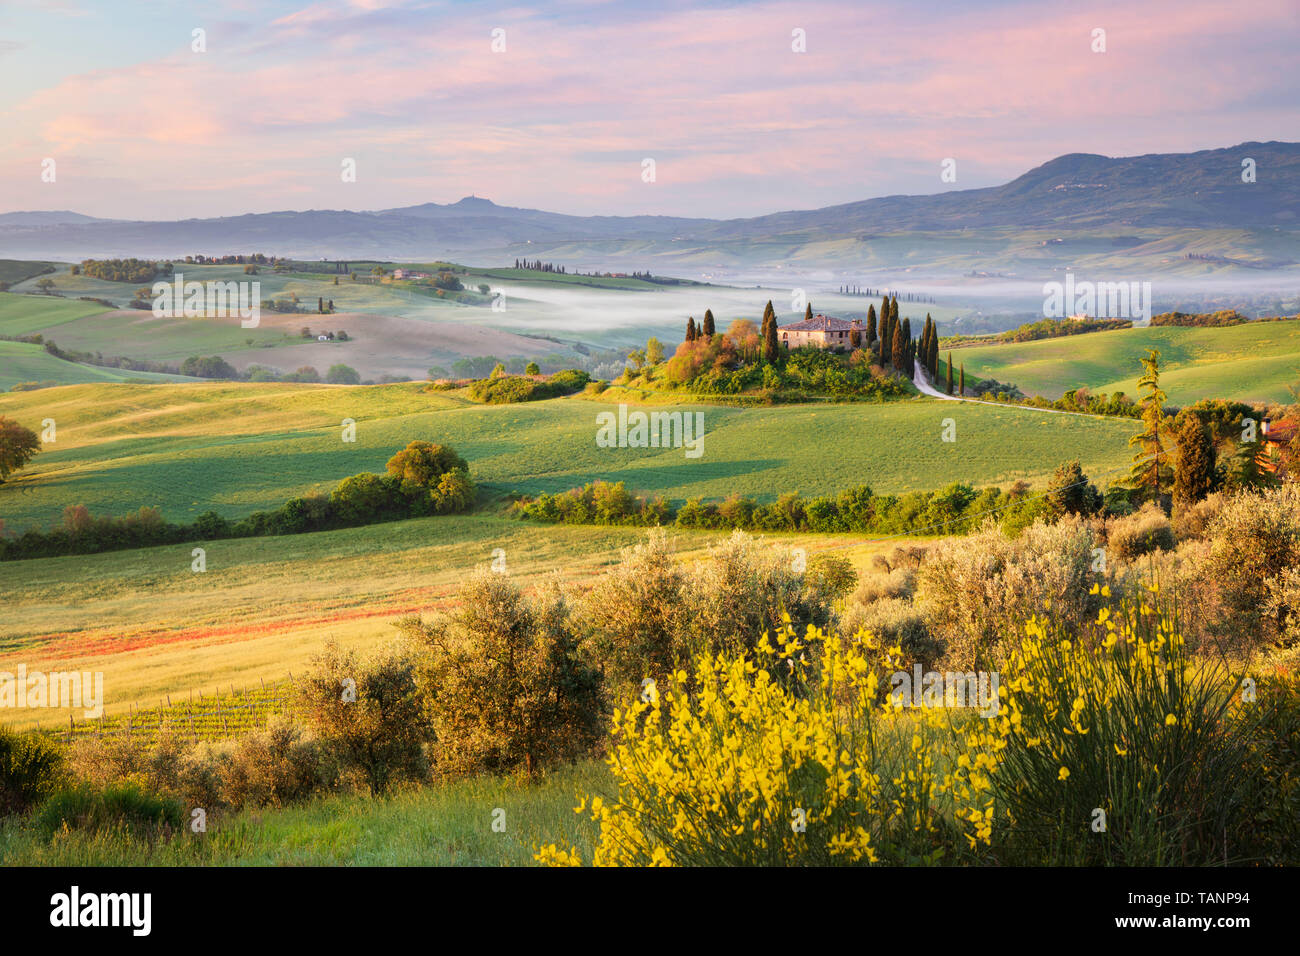 Vue sur le paysage toscan matin brumeux avec ferme traditionnelle et de cyprès, San Quirico d'Orcia, Province de Sienne, Toscane, Italie, Europe Banque D'Images